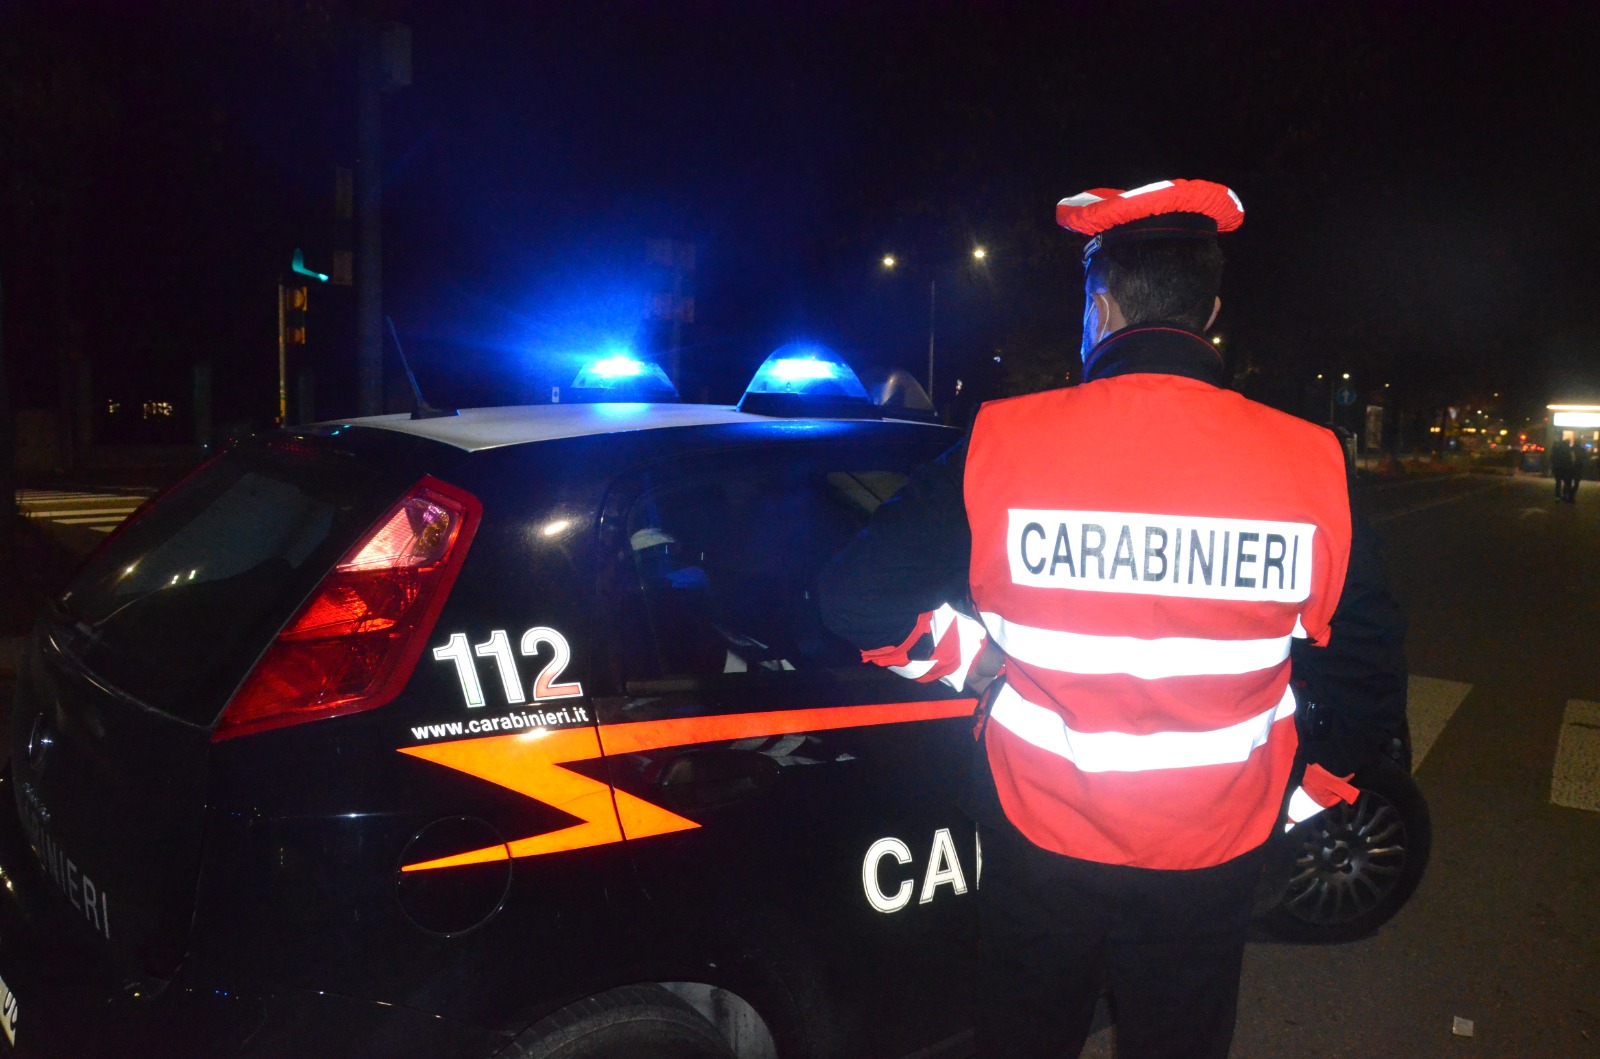  Castelnuovo Rangone / Arrivano i Carabinieri. Ladri in fuga nelle campagne.